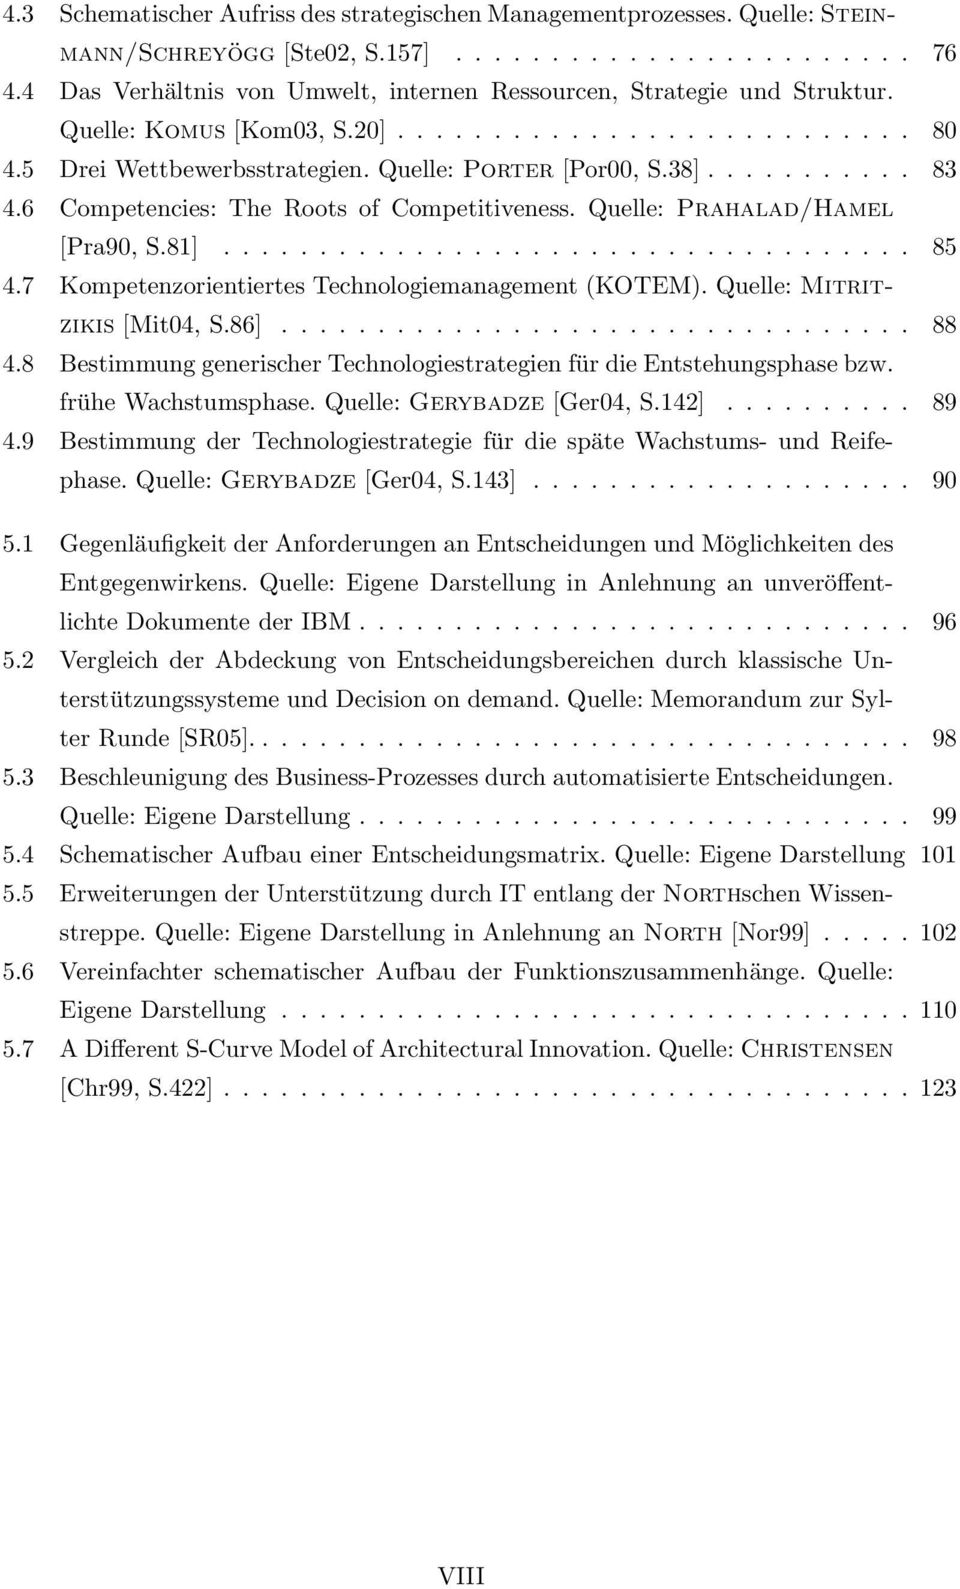 6 Competencies: The Roots of Competitiveness. Quelle: Prahalad/Hamel [Pra90, S.81].................................... 85 4.7 Kompetenzorientiertes Technologiemanagement (KOTEM).